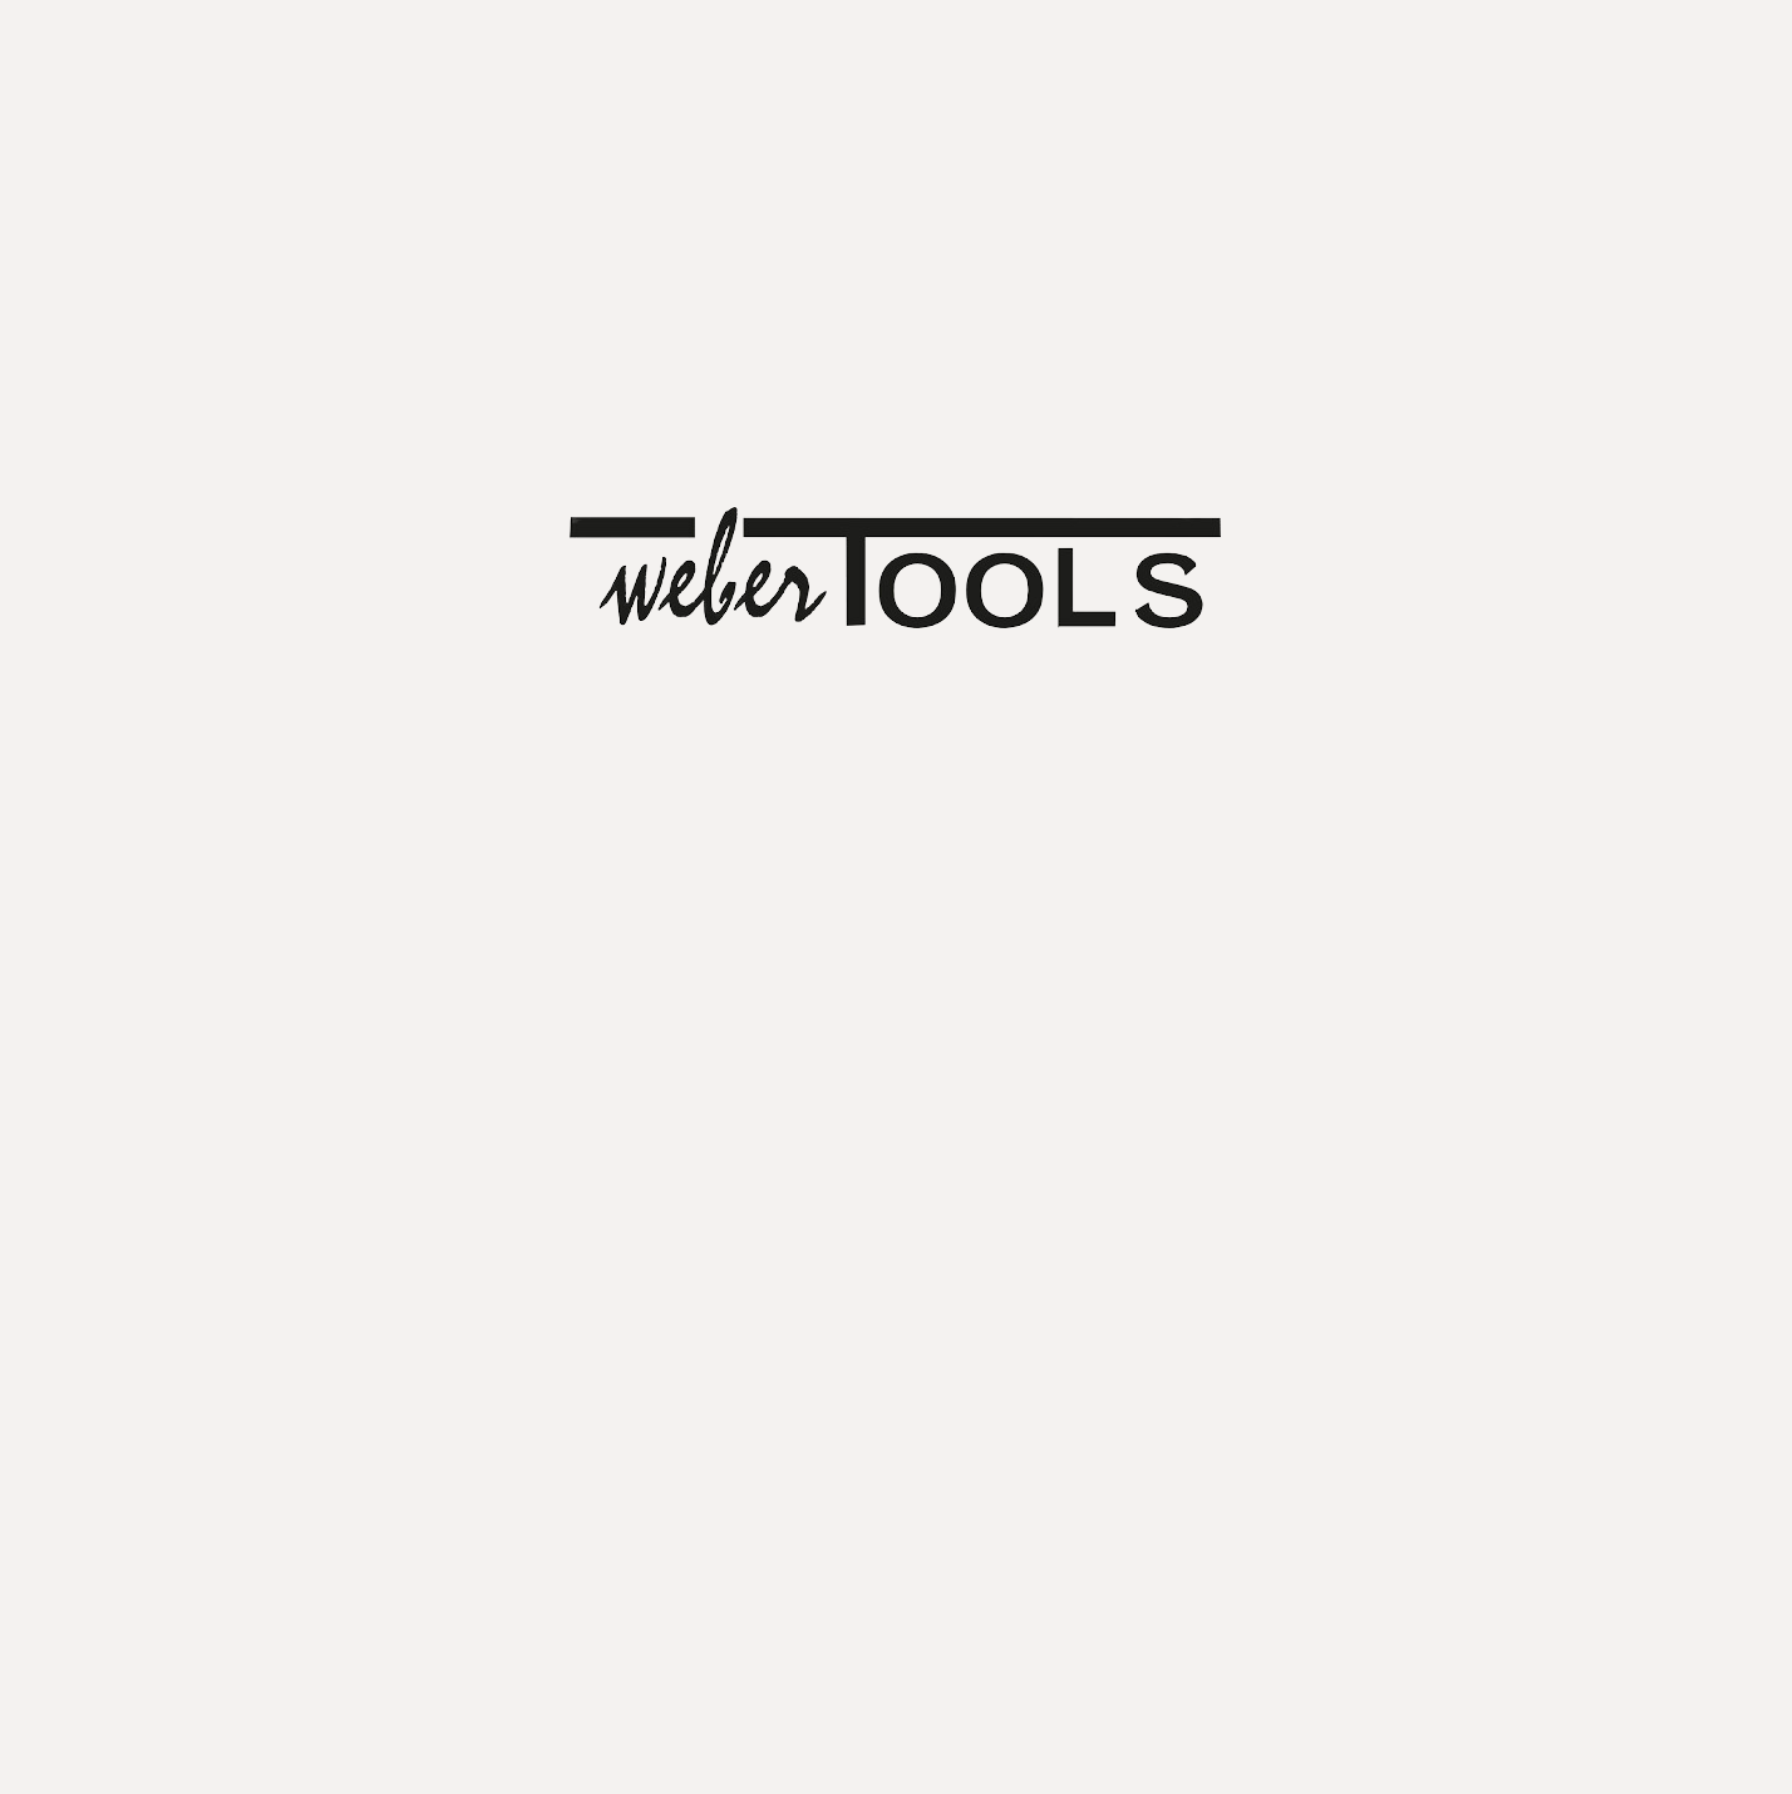 Weber tools